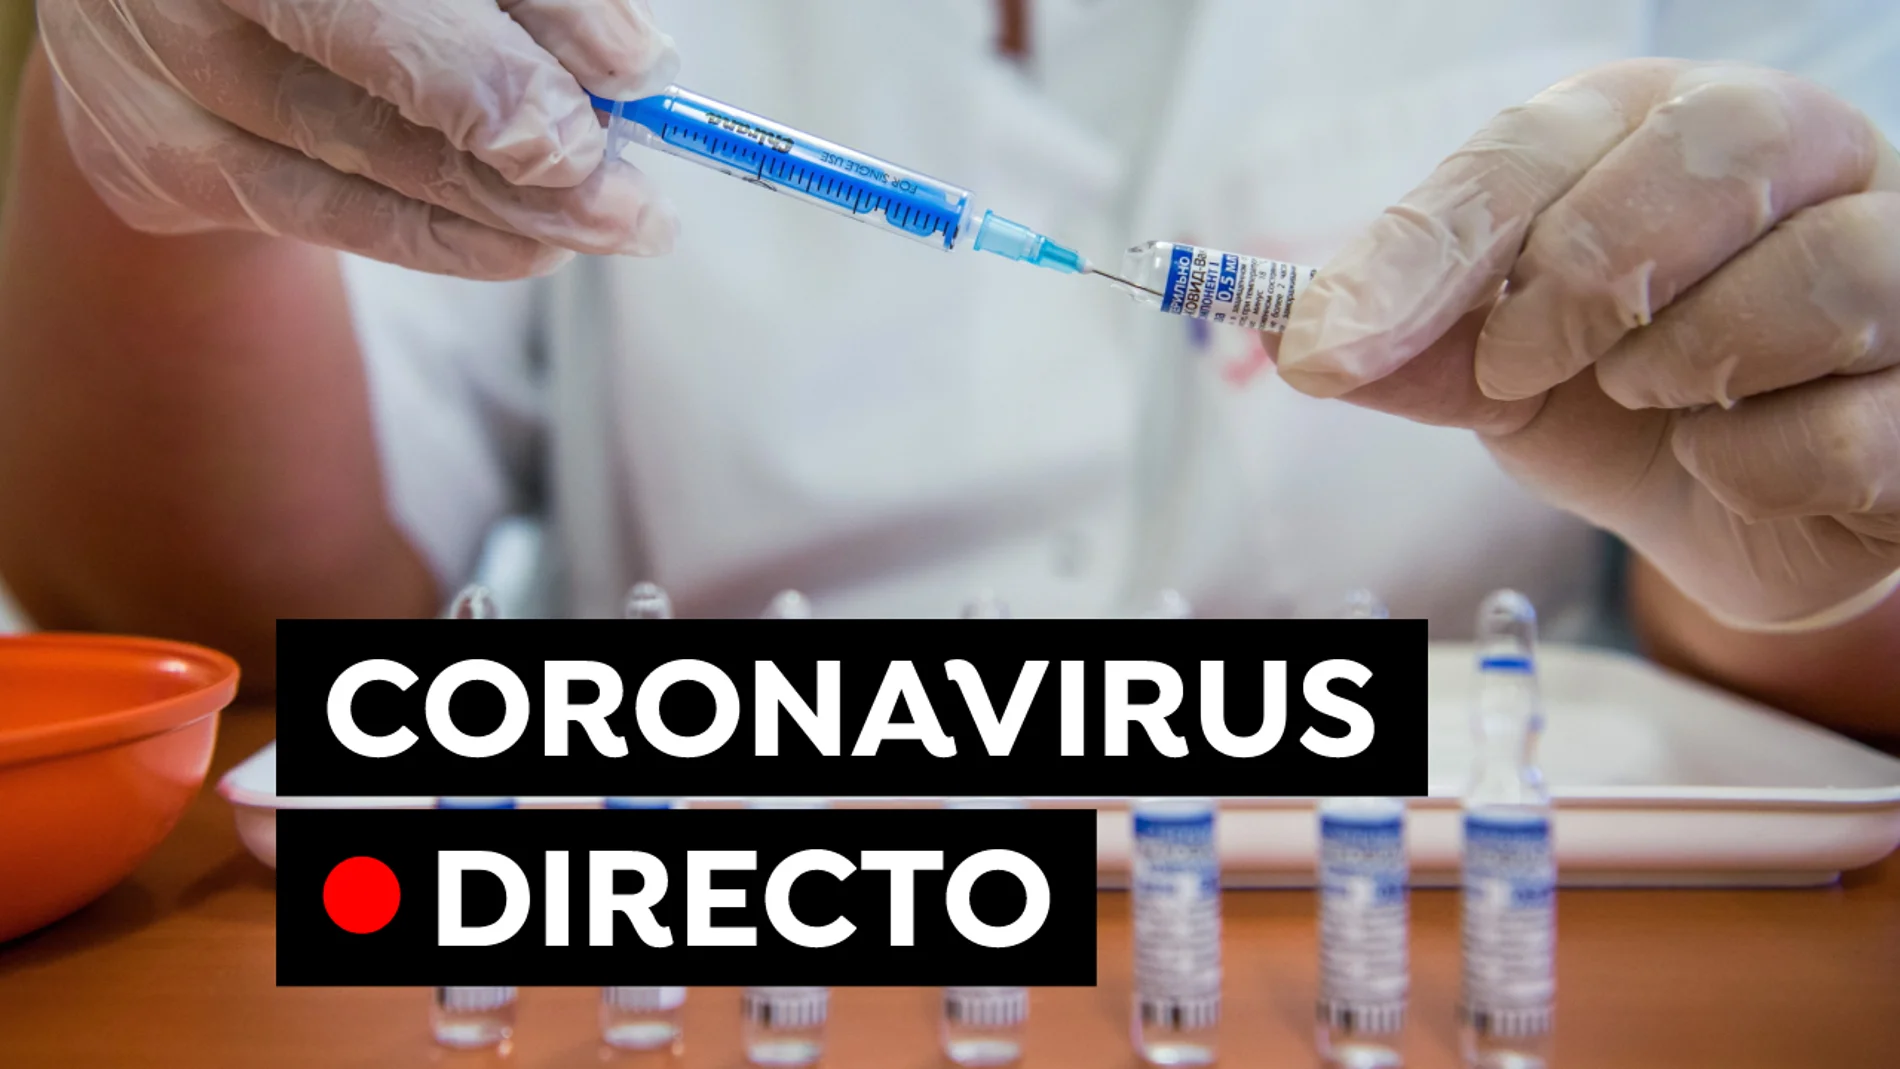 COVID-19 hoy: Datos de coronavirus en Madrid, Cataluña, Islas Canarias y nuevas restricciones, en directo